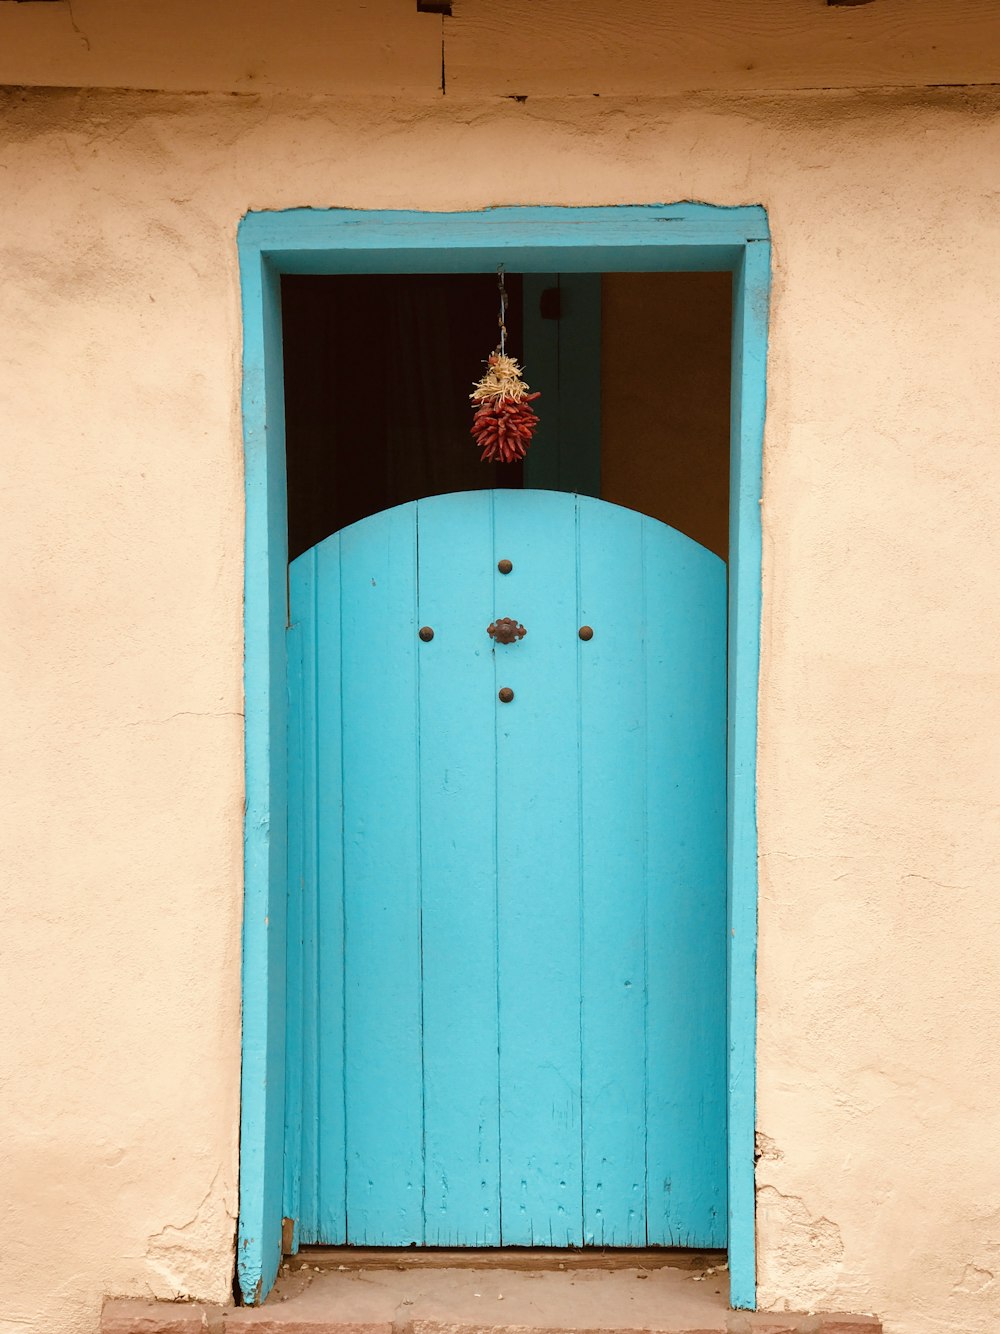 blue wooden door with red flower on top